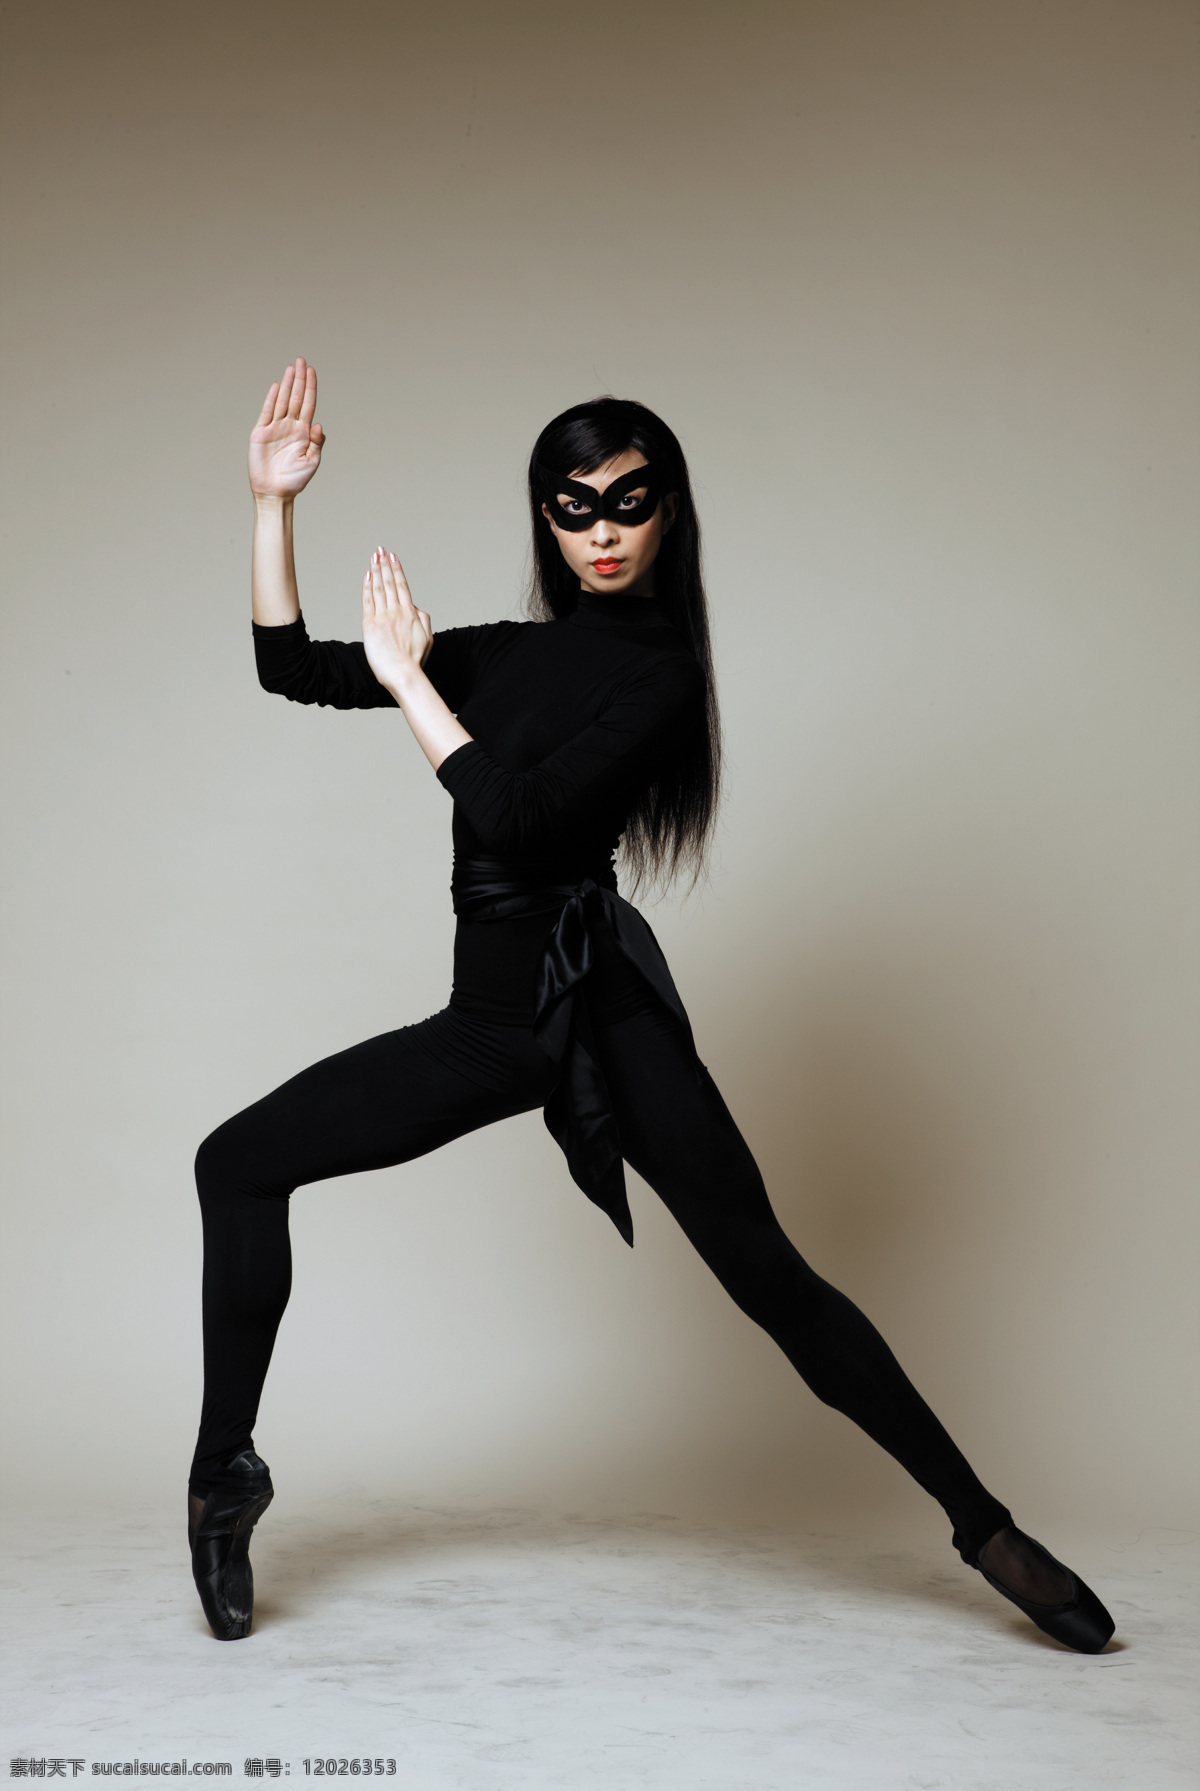 舞蹈免费下载 芭蕾 高清 女人 女性 人物图库 舞蹈 演员 舞蹈动作 优美 黑衣 蒙面 职业人物 psd源文件